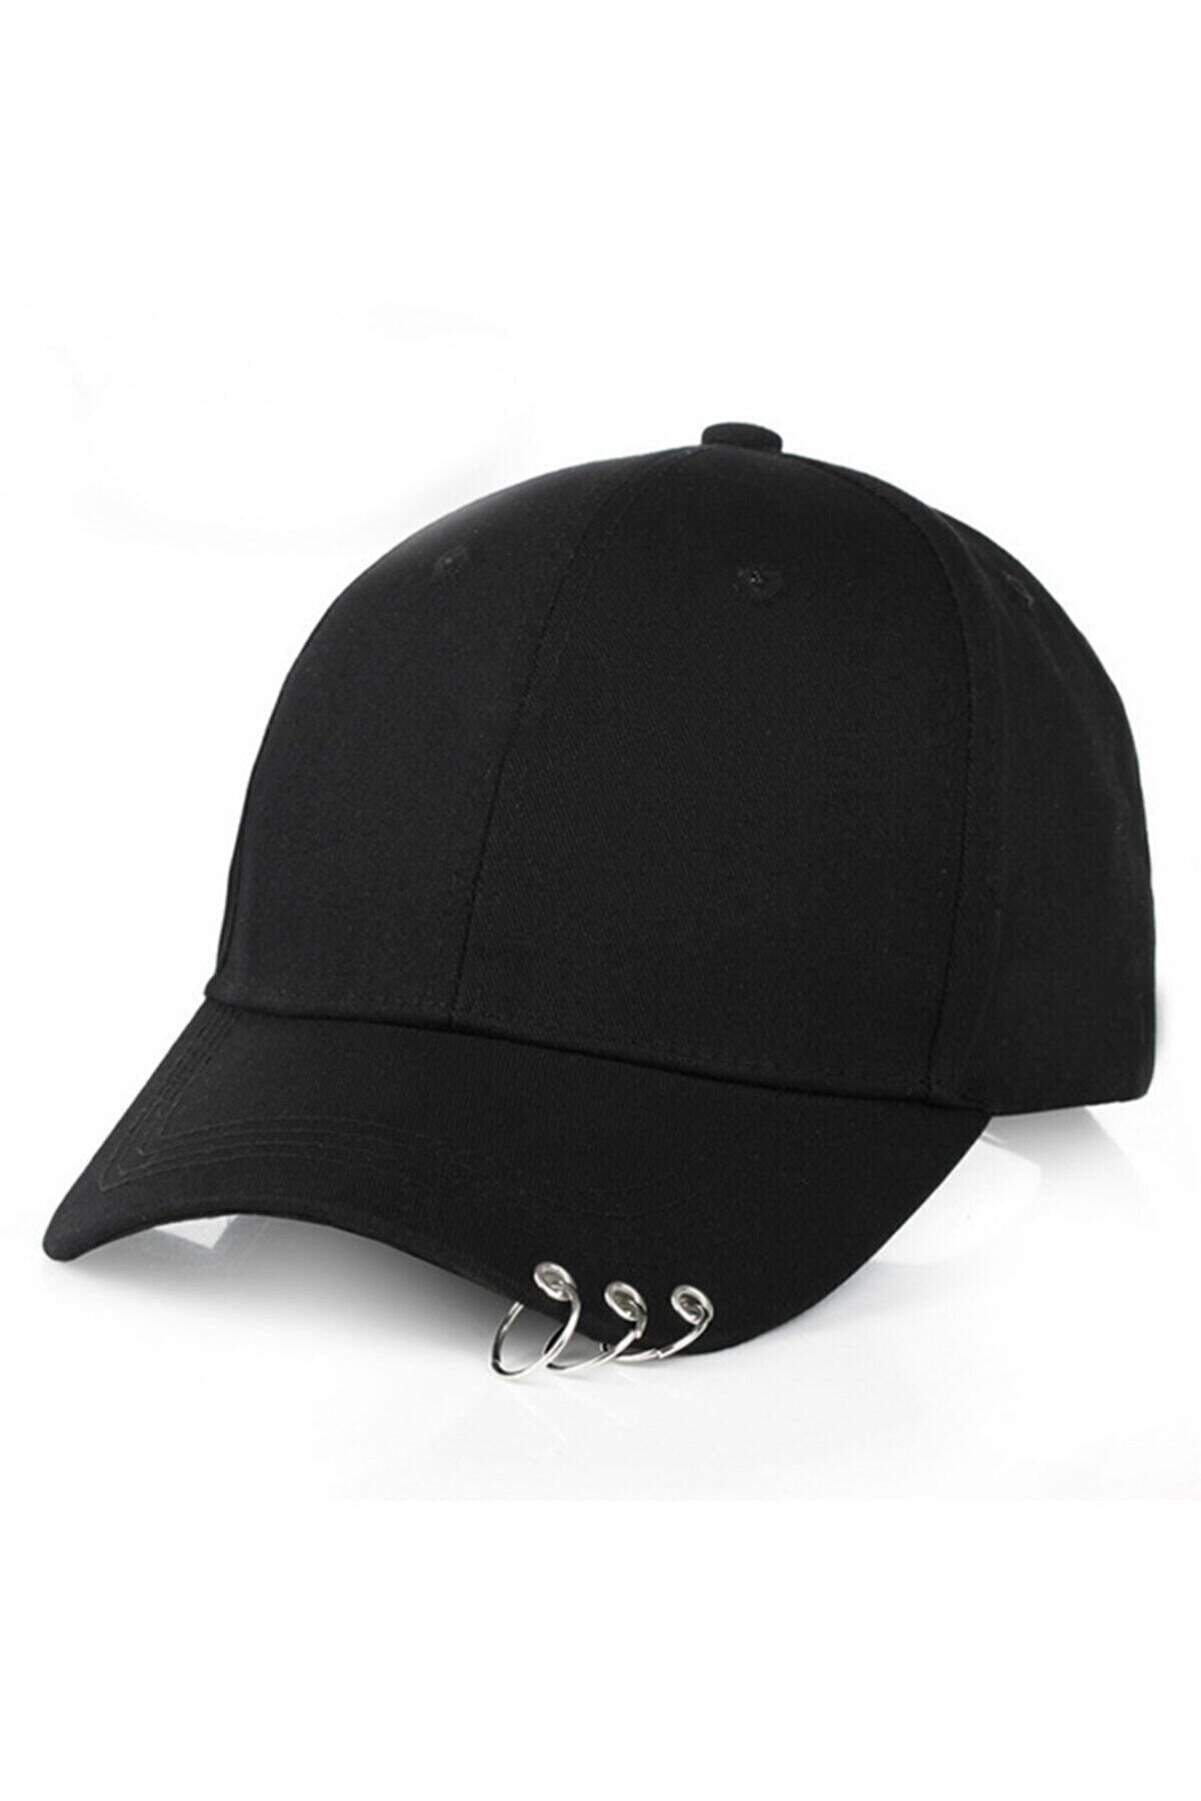 gökhanbijuteri 3 Halkalı Siyah Piercing Şapka